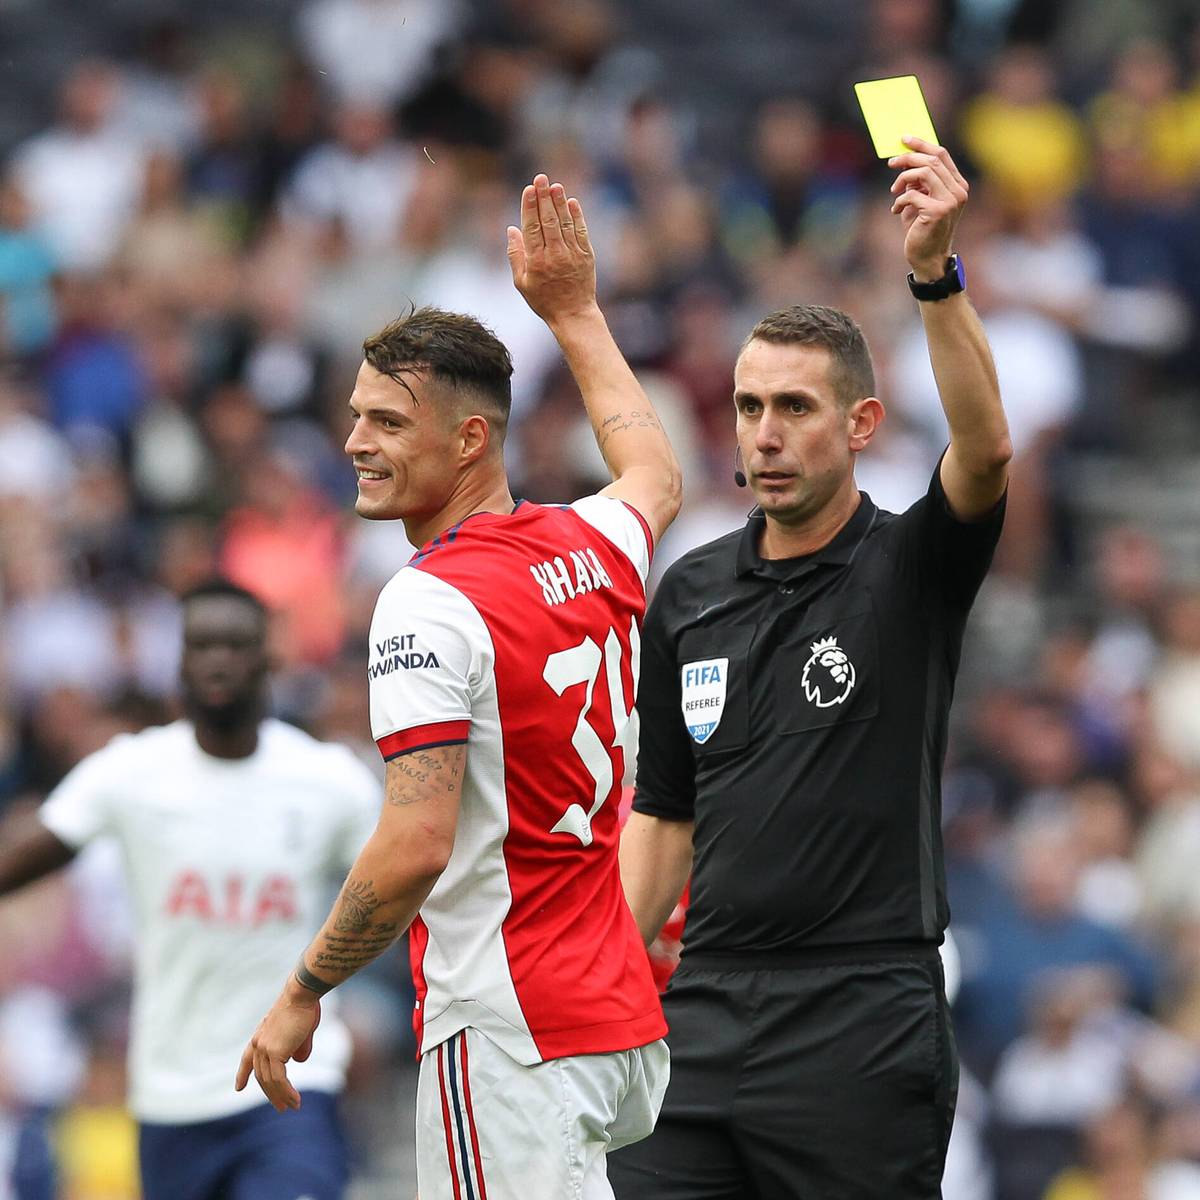 Eine Gelbe Karte von Arsenal-Star Granit Xhaka in der Premier League hat einen verdächtig hohen Wettgewinn zur Folge. Der Fall wird untersucht.